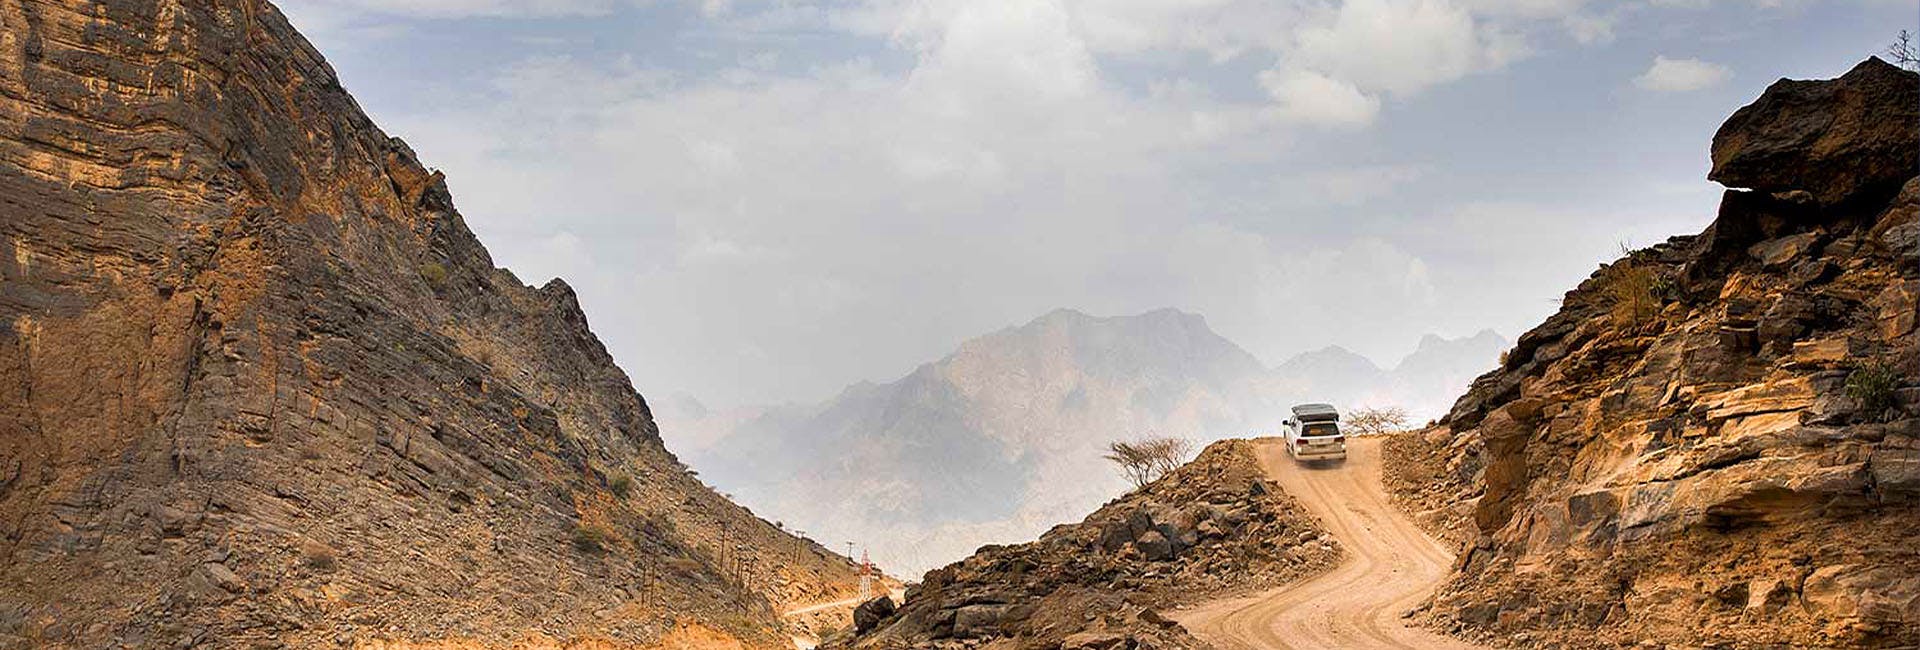 Wadi Shab conduite hors route, trekking doux et expérience de natation